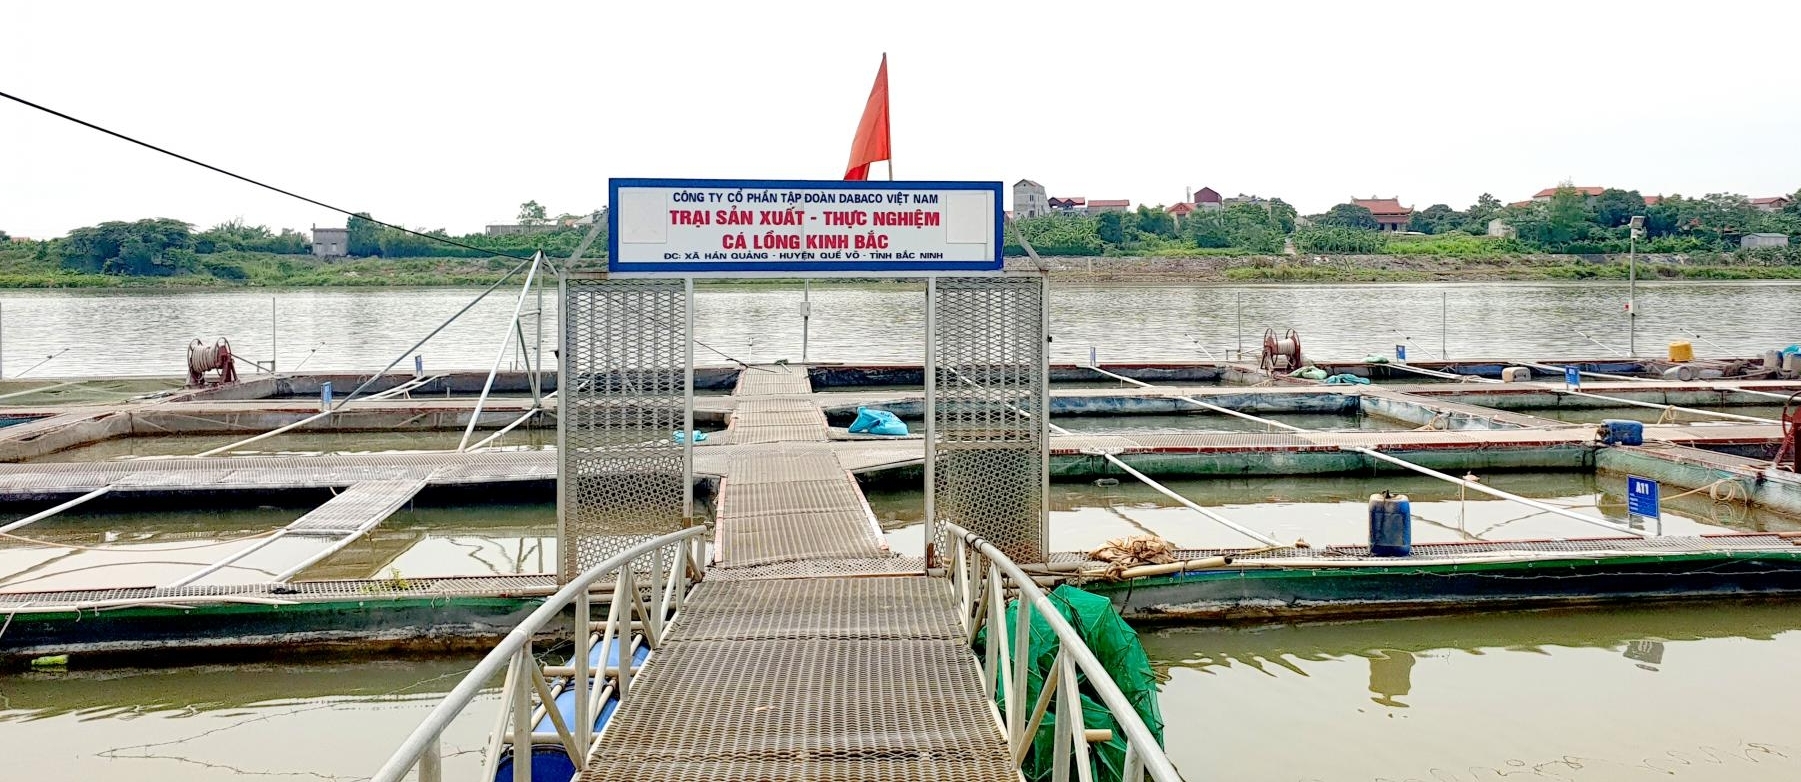 Phong trào nuôi thủy sản tại Bắc Ninh hiện đang phát triển rất mạnh trên các hệ thống sông Đuống, sông Thái Bình và sông Cầu.